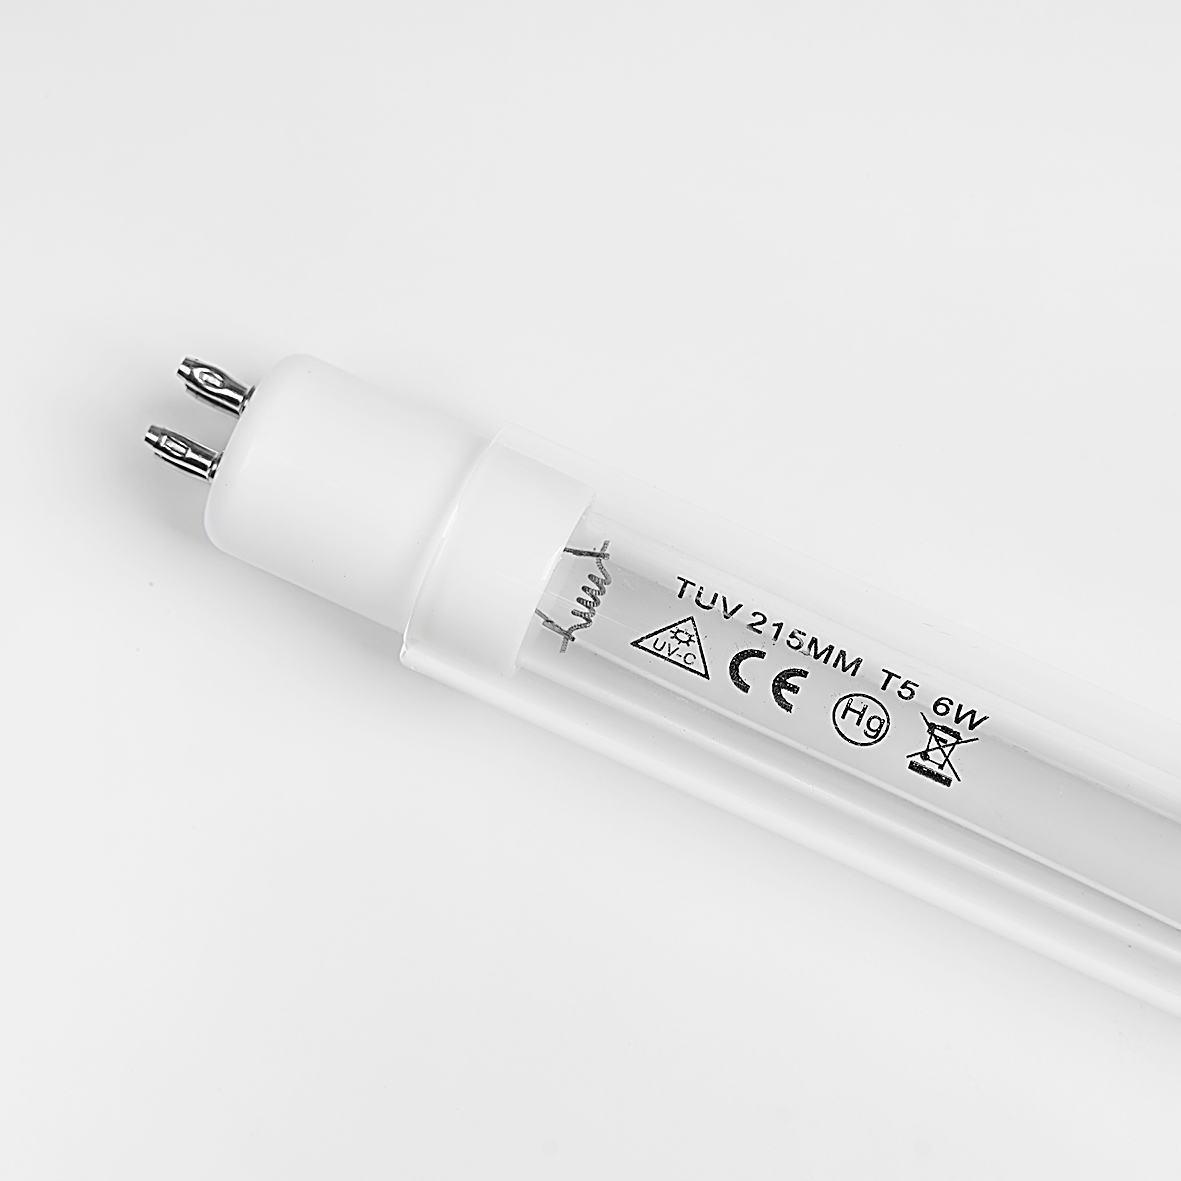 Bóng đèn UV máy lọc nước 6w – dài 215mm- 4 chấu